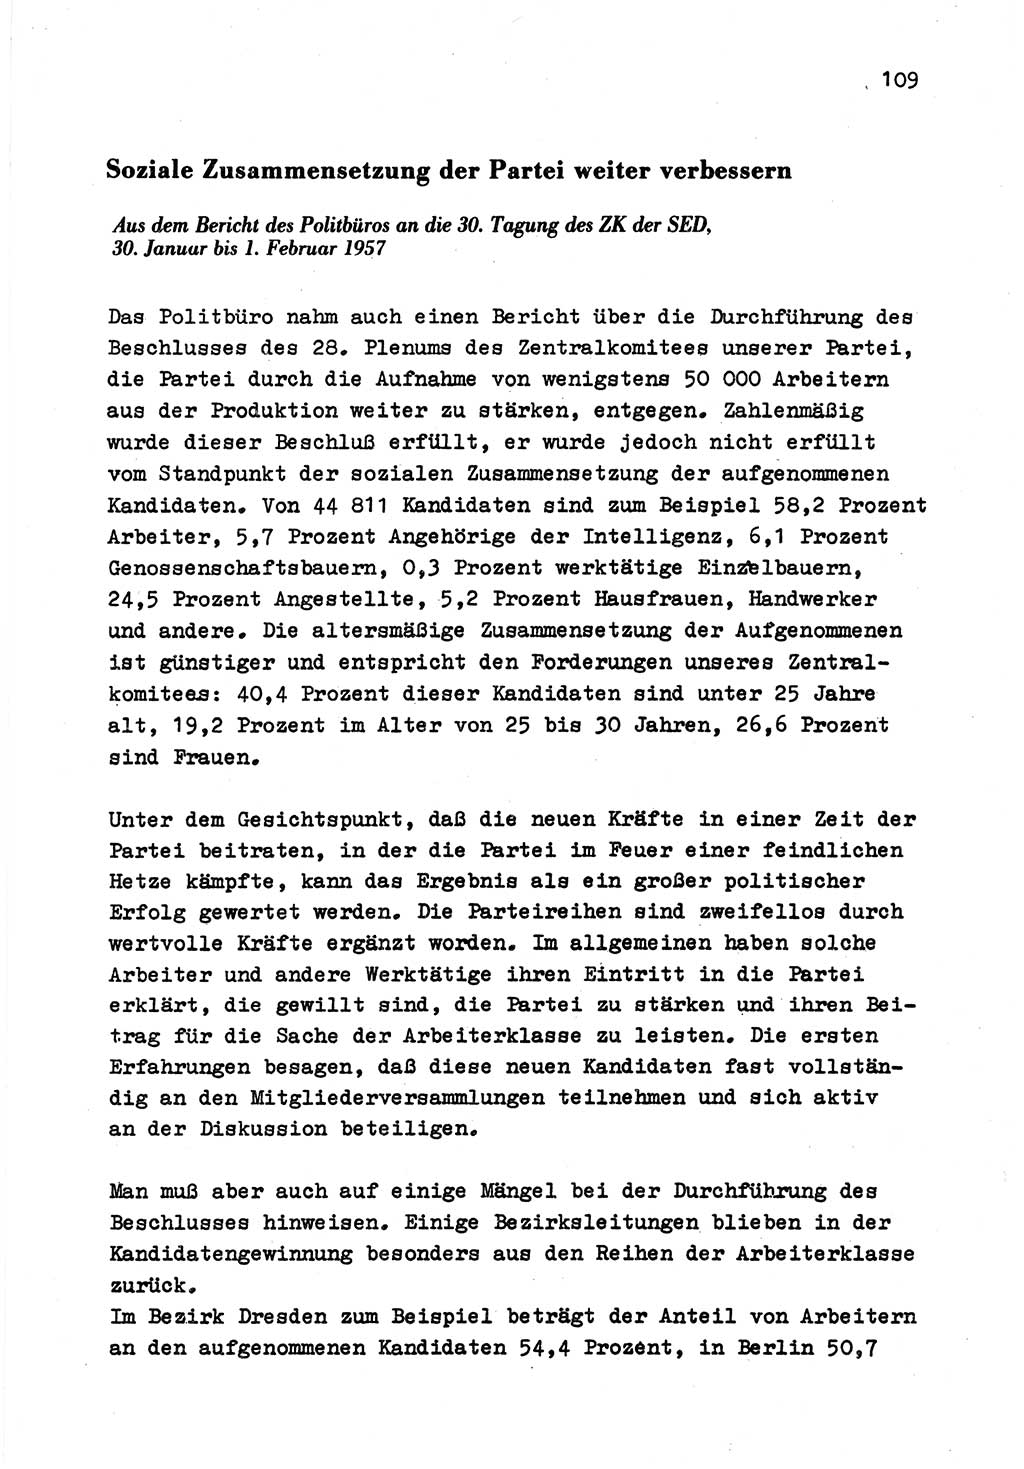 Zu Fragen der Parteiarbeit [Sozialistische Einheitspartei Deutschlands (SED) Deutsche Demokratische Republik (DDR)] 1979, Seite 109 (Fr. PA SED DDR 1979, S. 109)